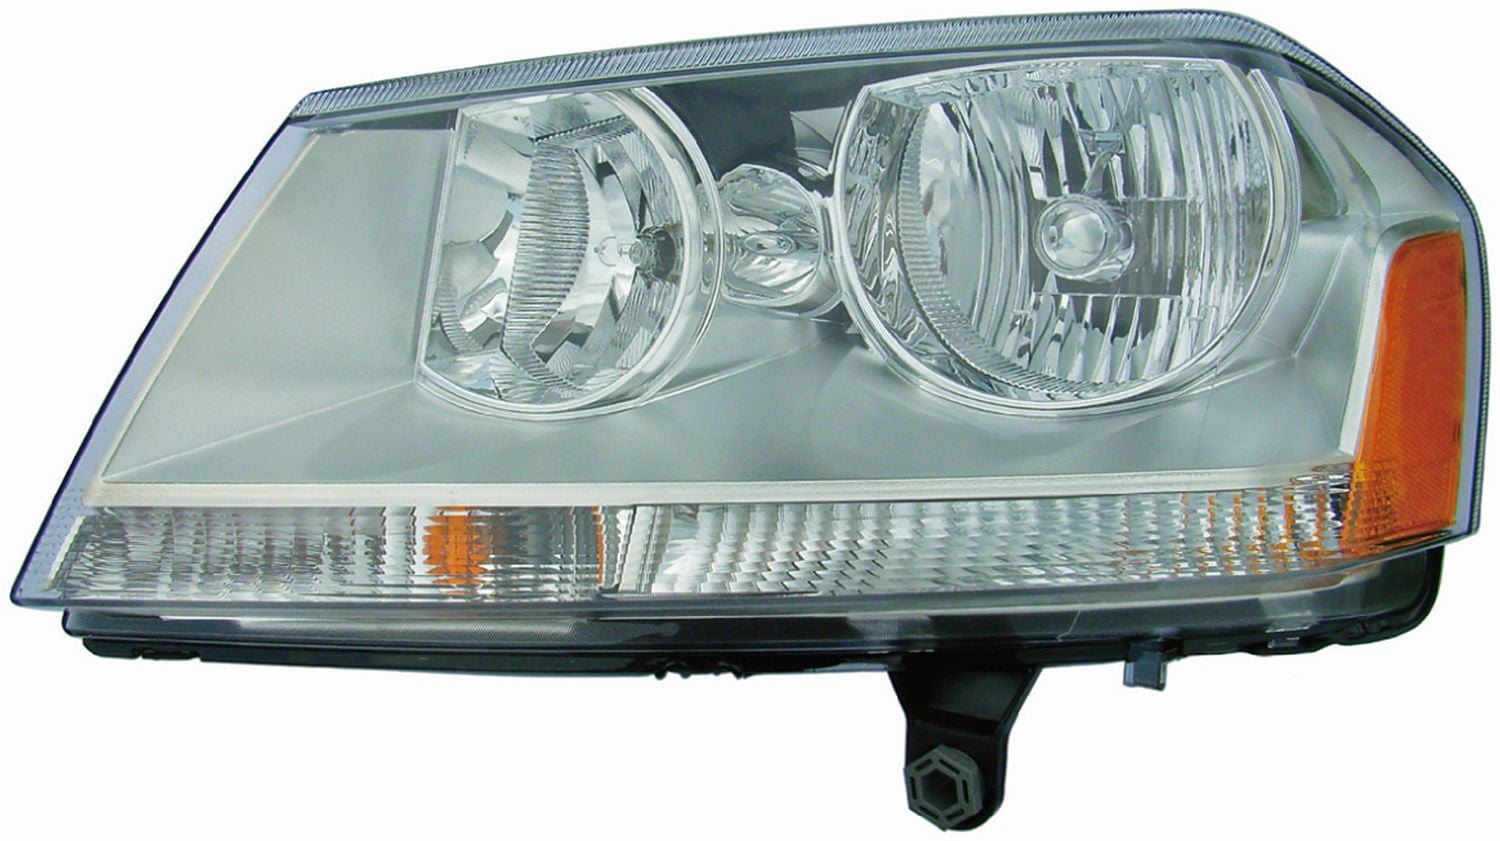 Dorman 1592213 Passenger Side Headlight Assembly For Select Dodge Models